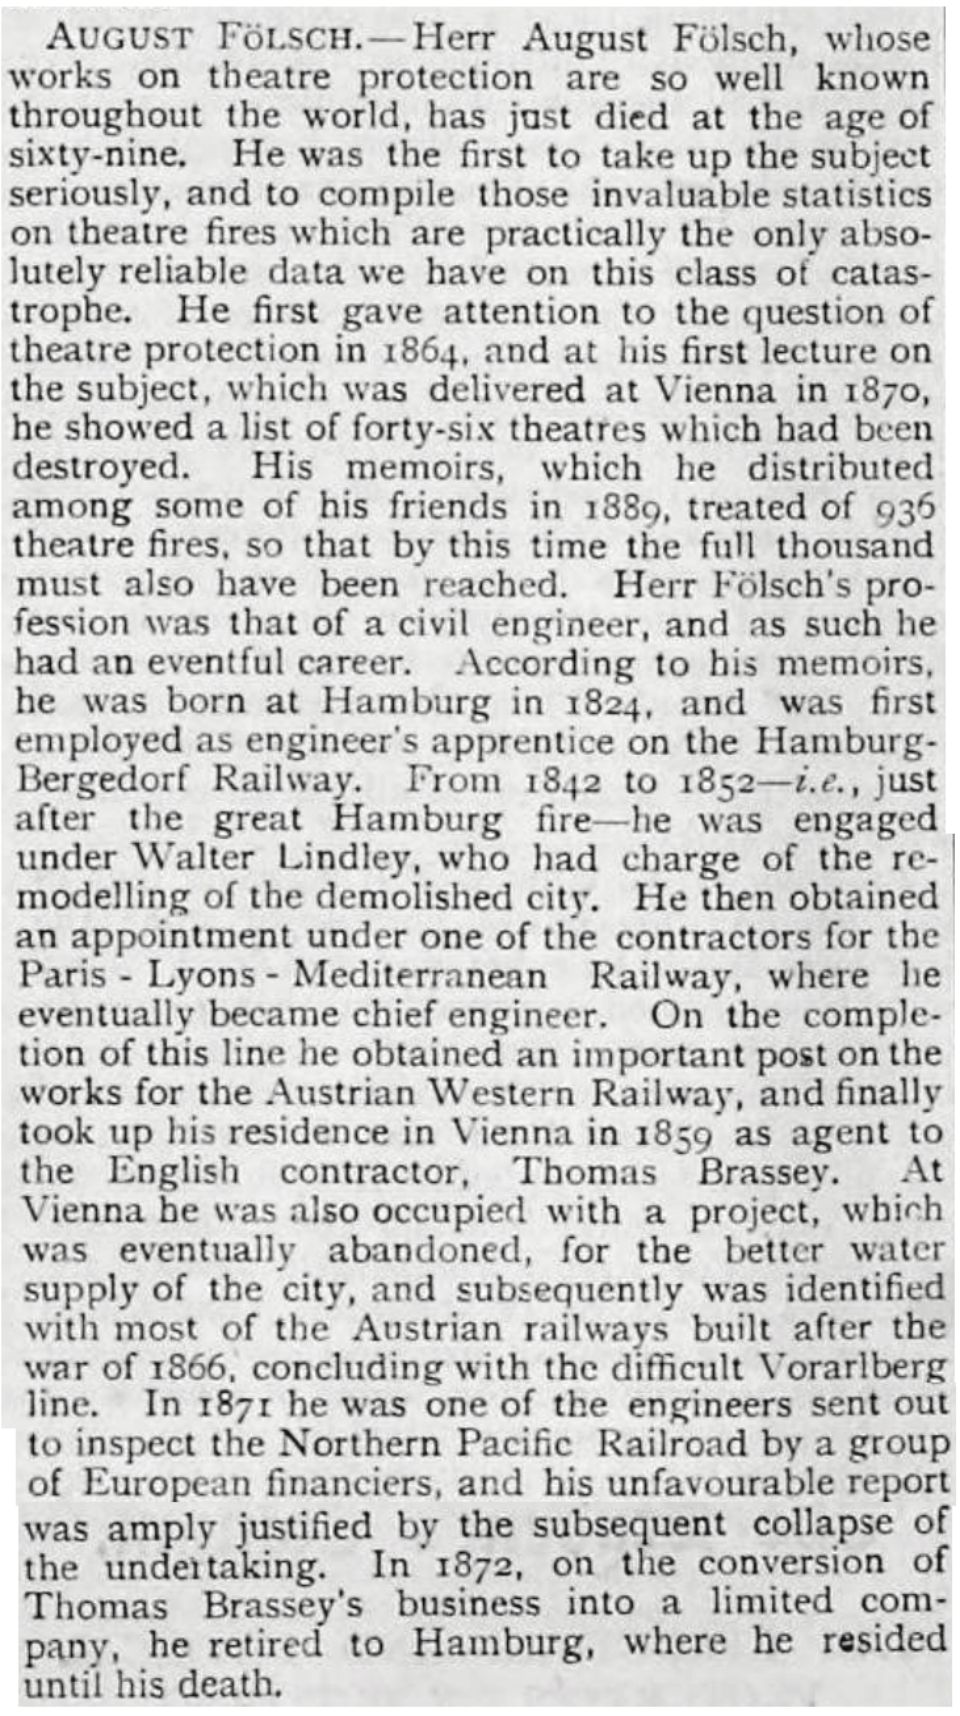 Biography of August Folsch, Theater fire scholar